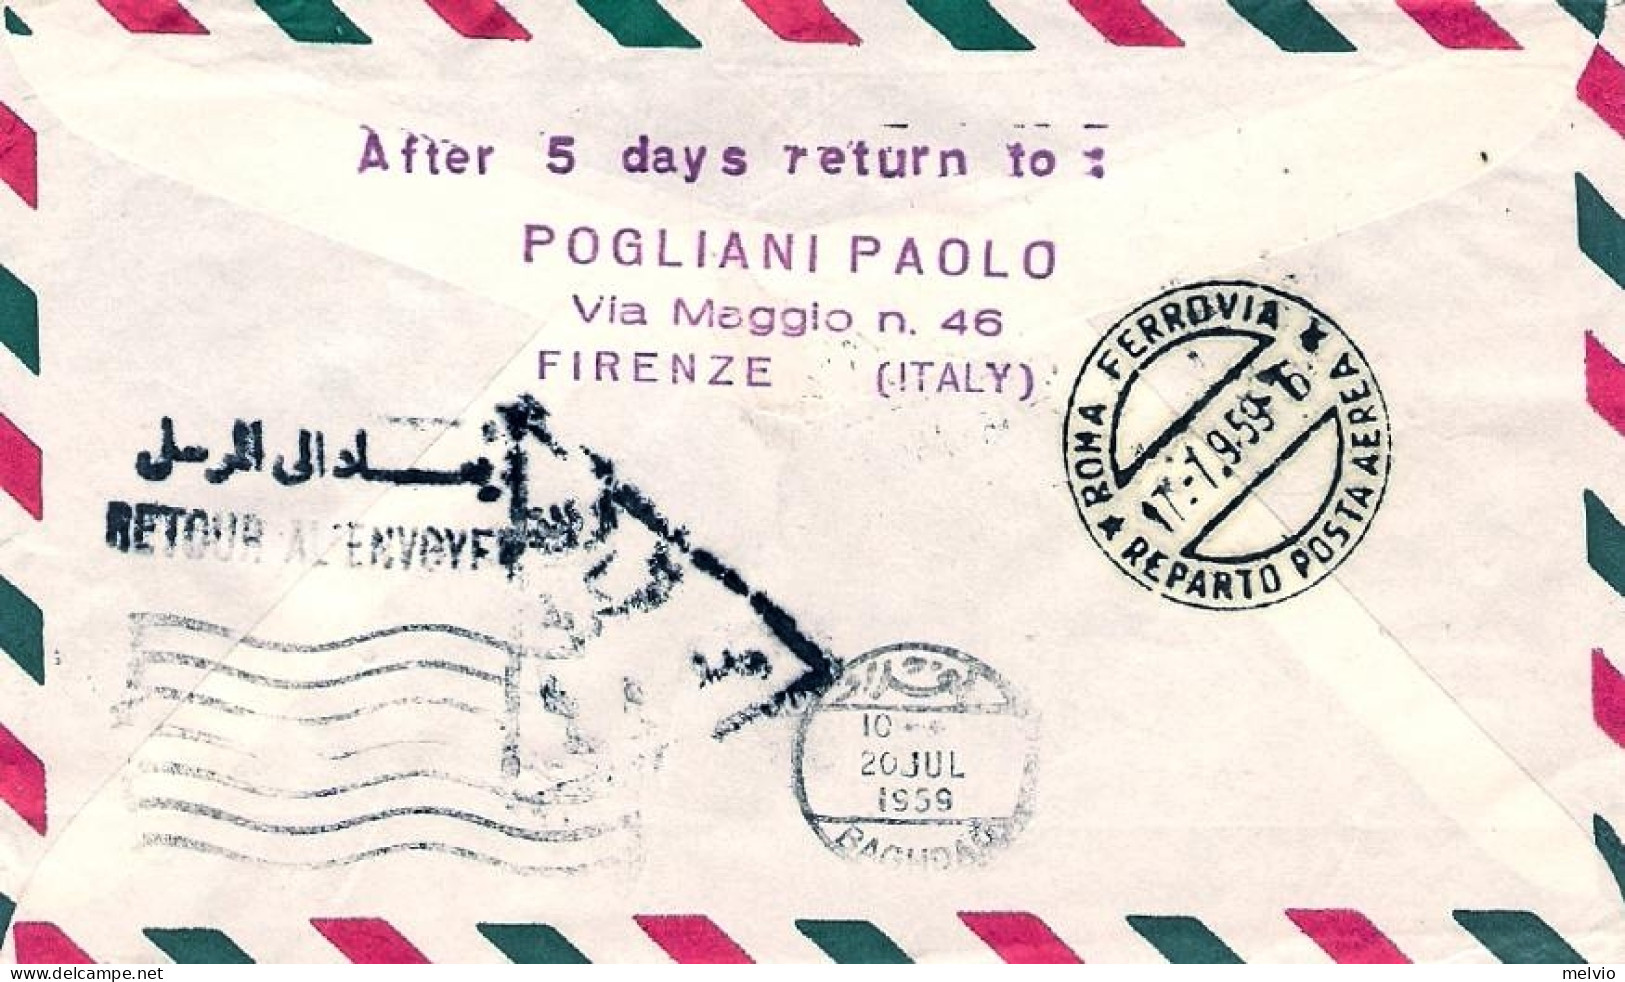 Vaticano-1959 Con Erinnofilo I^volo Caravelle Roma Baghdad (30 Pezzi Trasportati - Luftpost